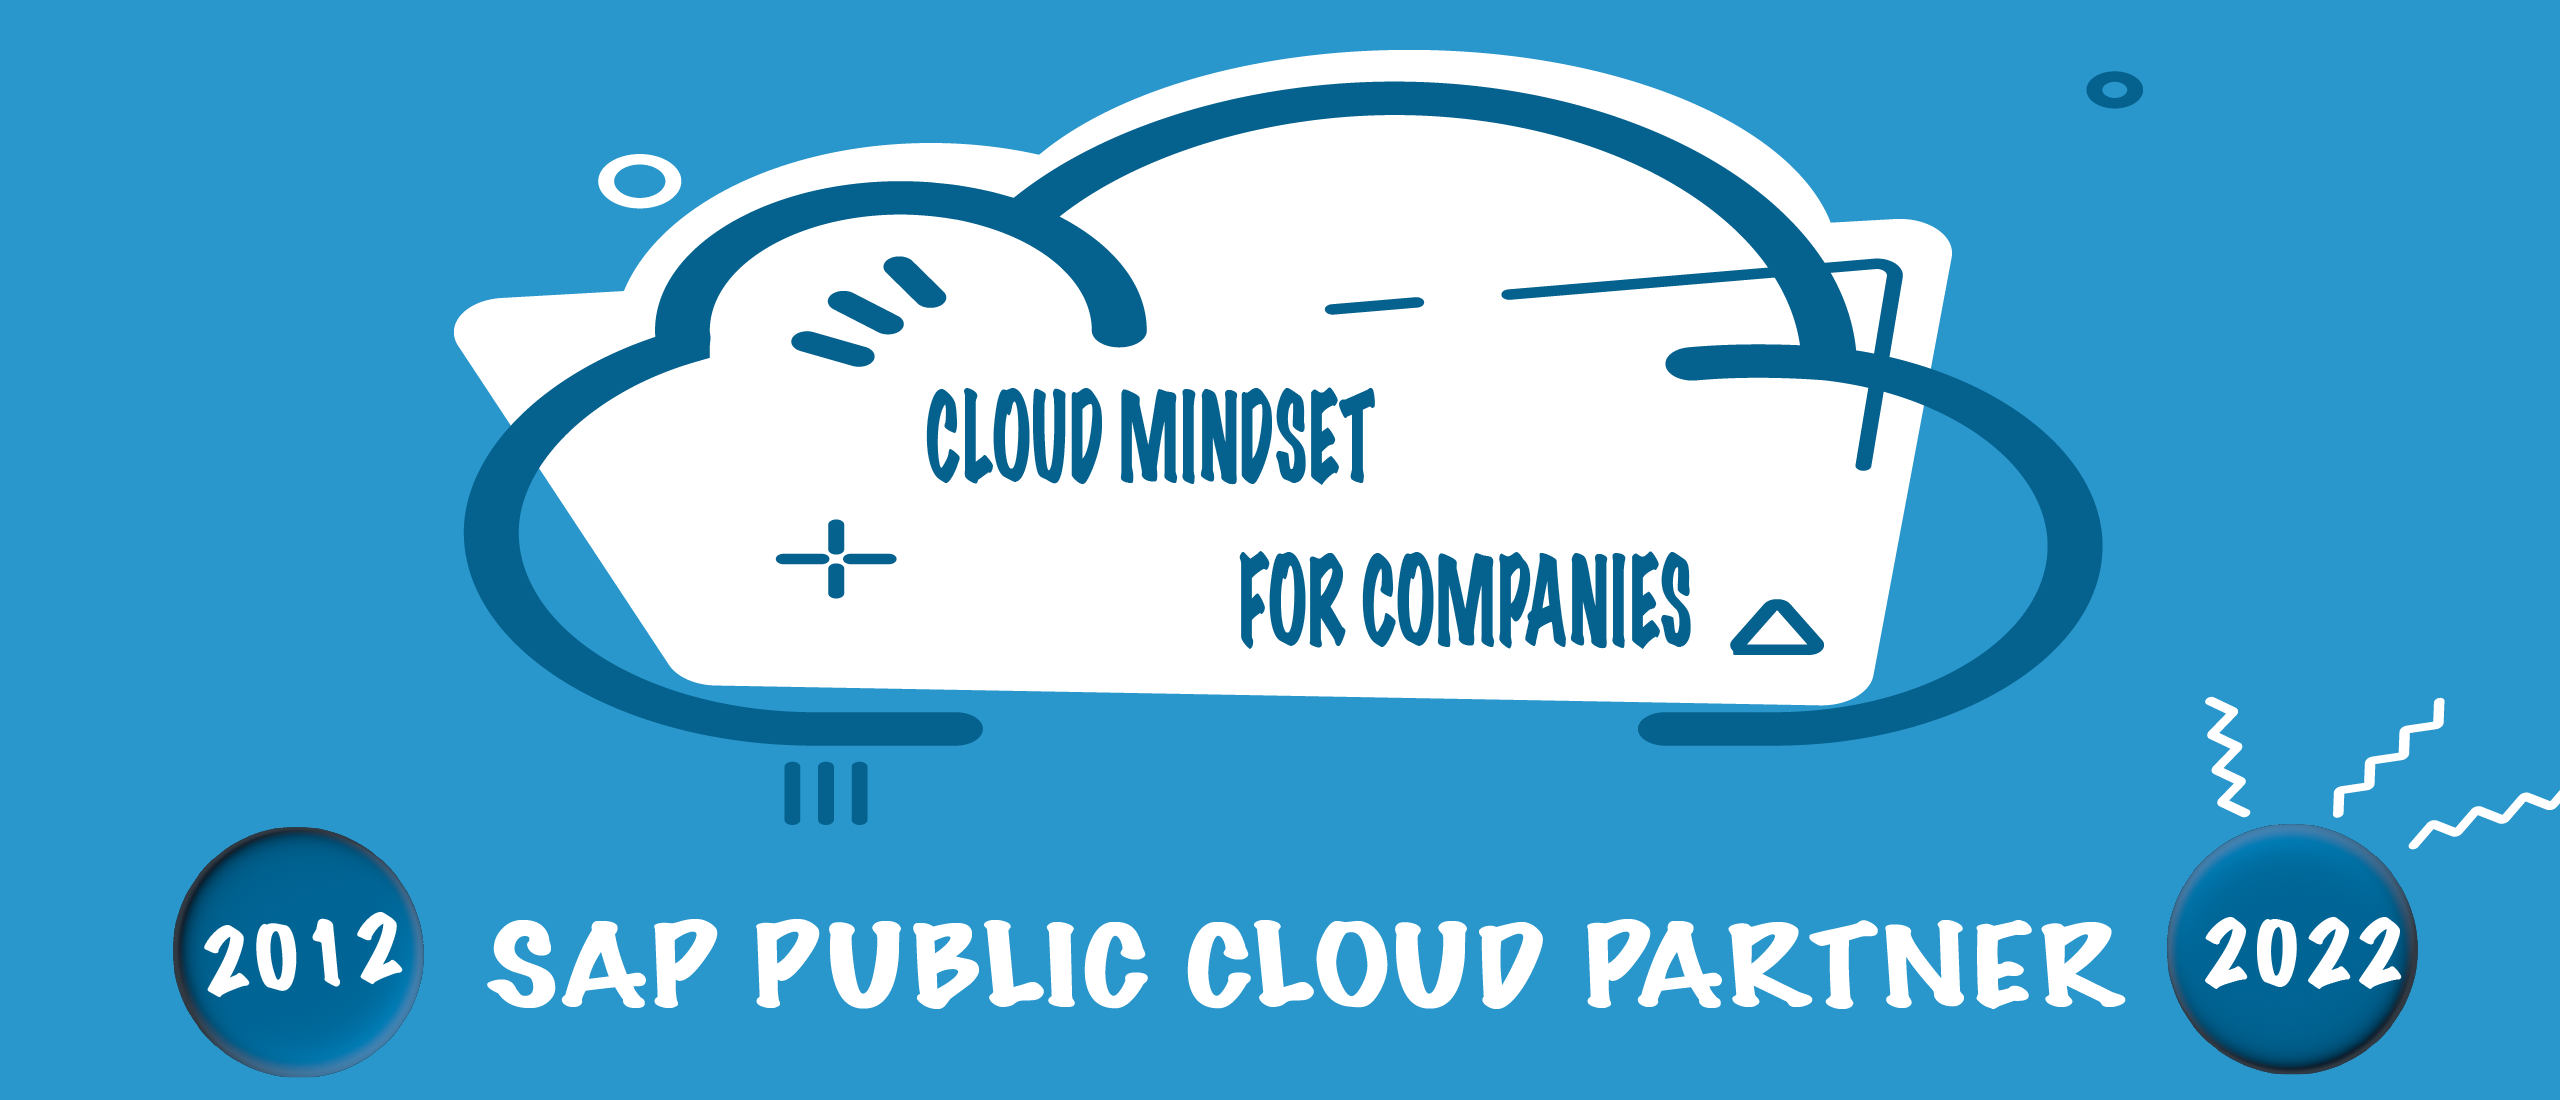 SAP Public Cloud - Cloud Mindset for Companies